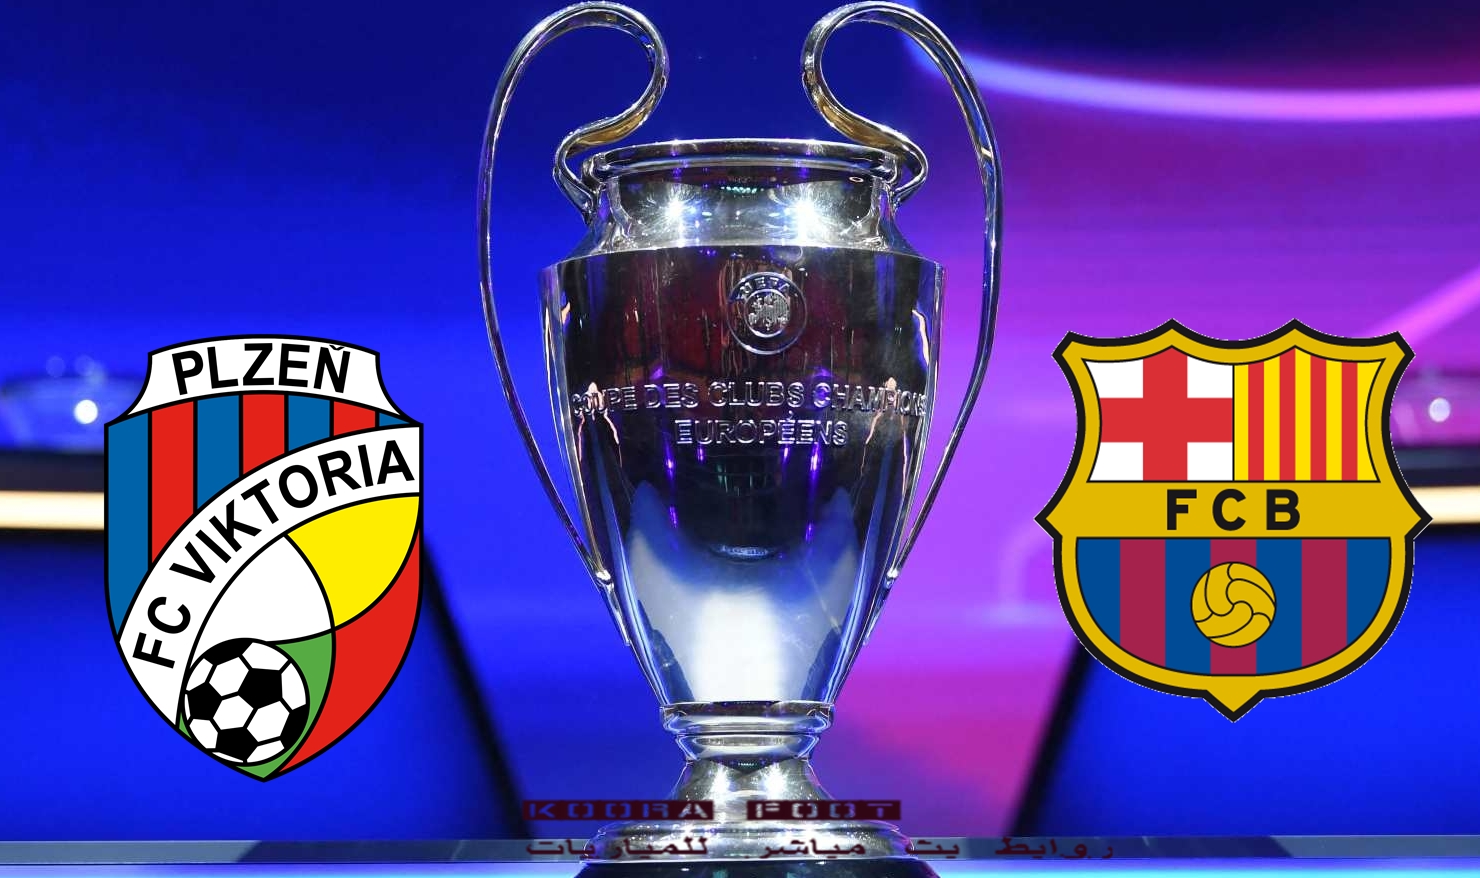 موعد مباراة برشلونة وفيكتوريا بلزن في دوري أبطال أوروبا 2022-23 والقنوات الناقلة